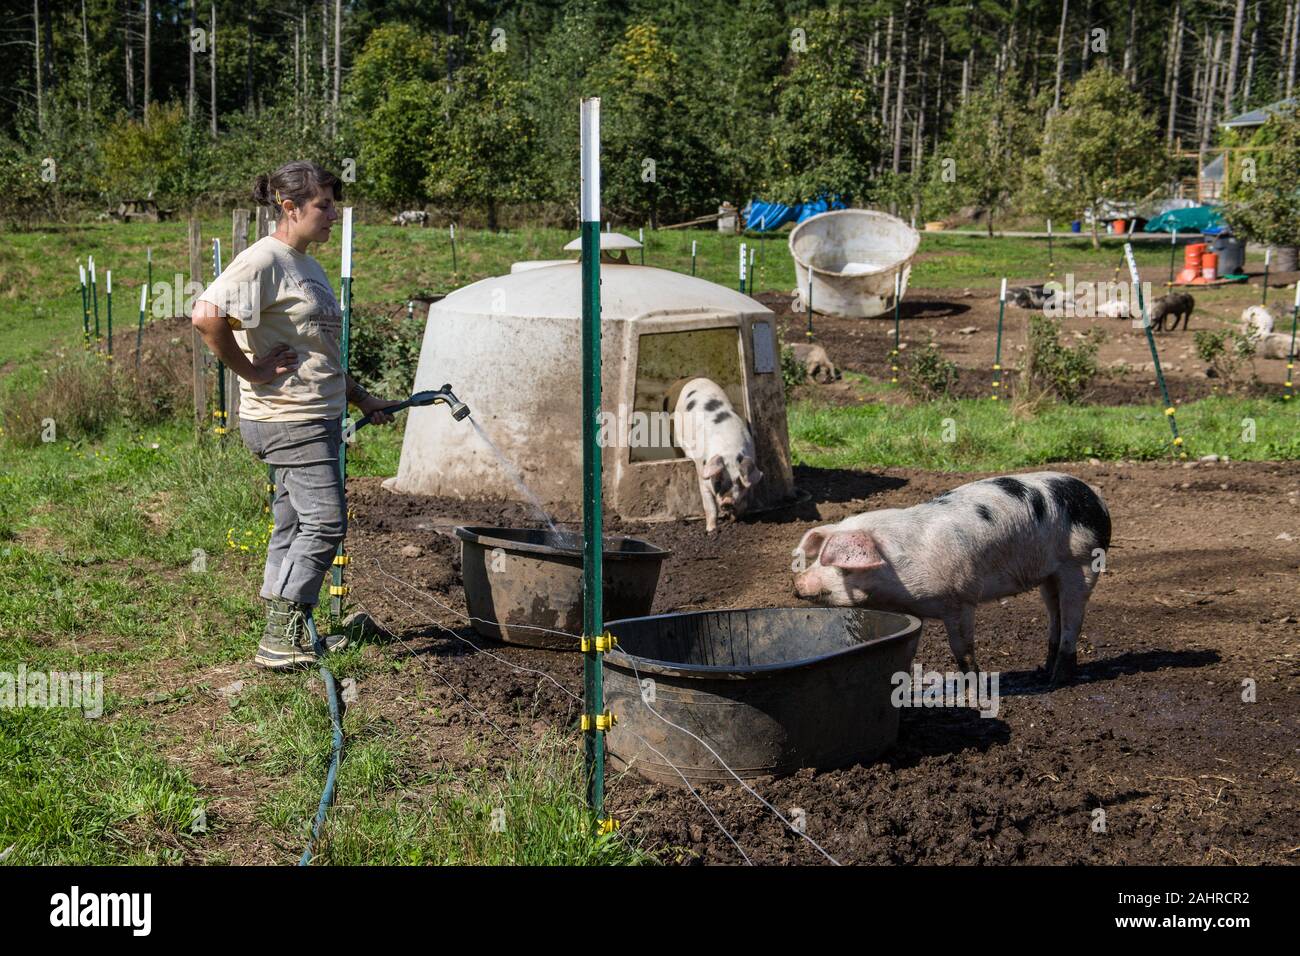 Frau neubefüllung Gloucestershire alte Flecken Schwein wasser Whirlpool im westlichen Washington, USA. Schweine müssen mindestens zweimal am Tag, 365 Tage im Jahr, so Yo Stockfoto